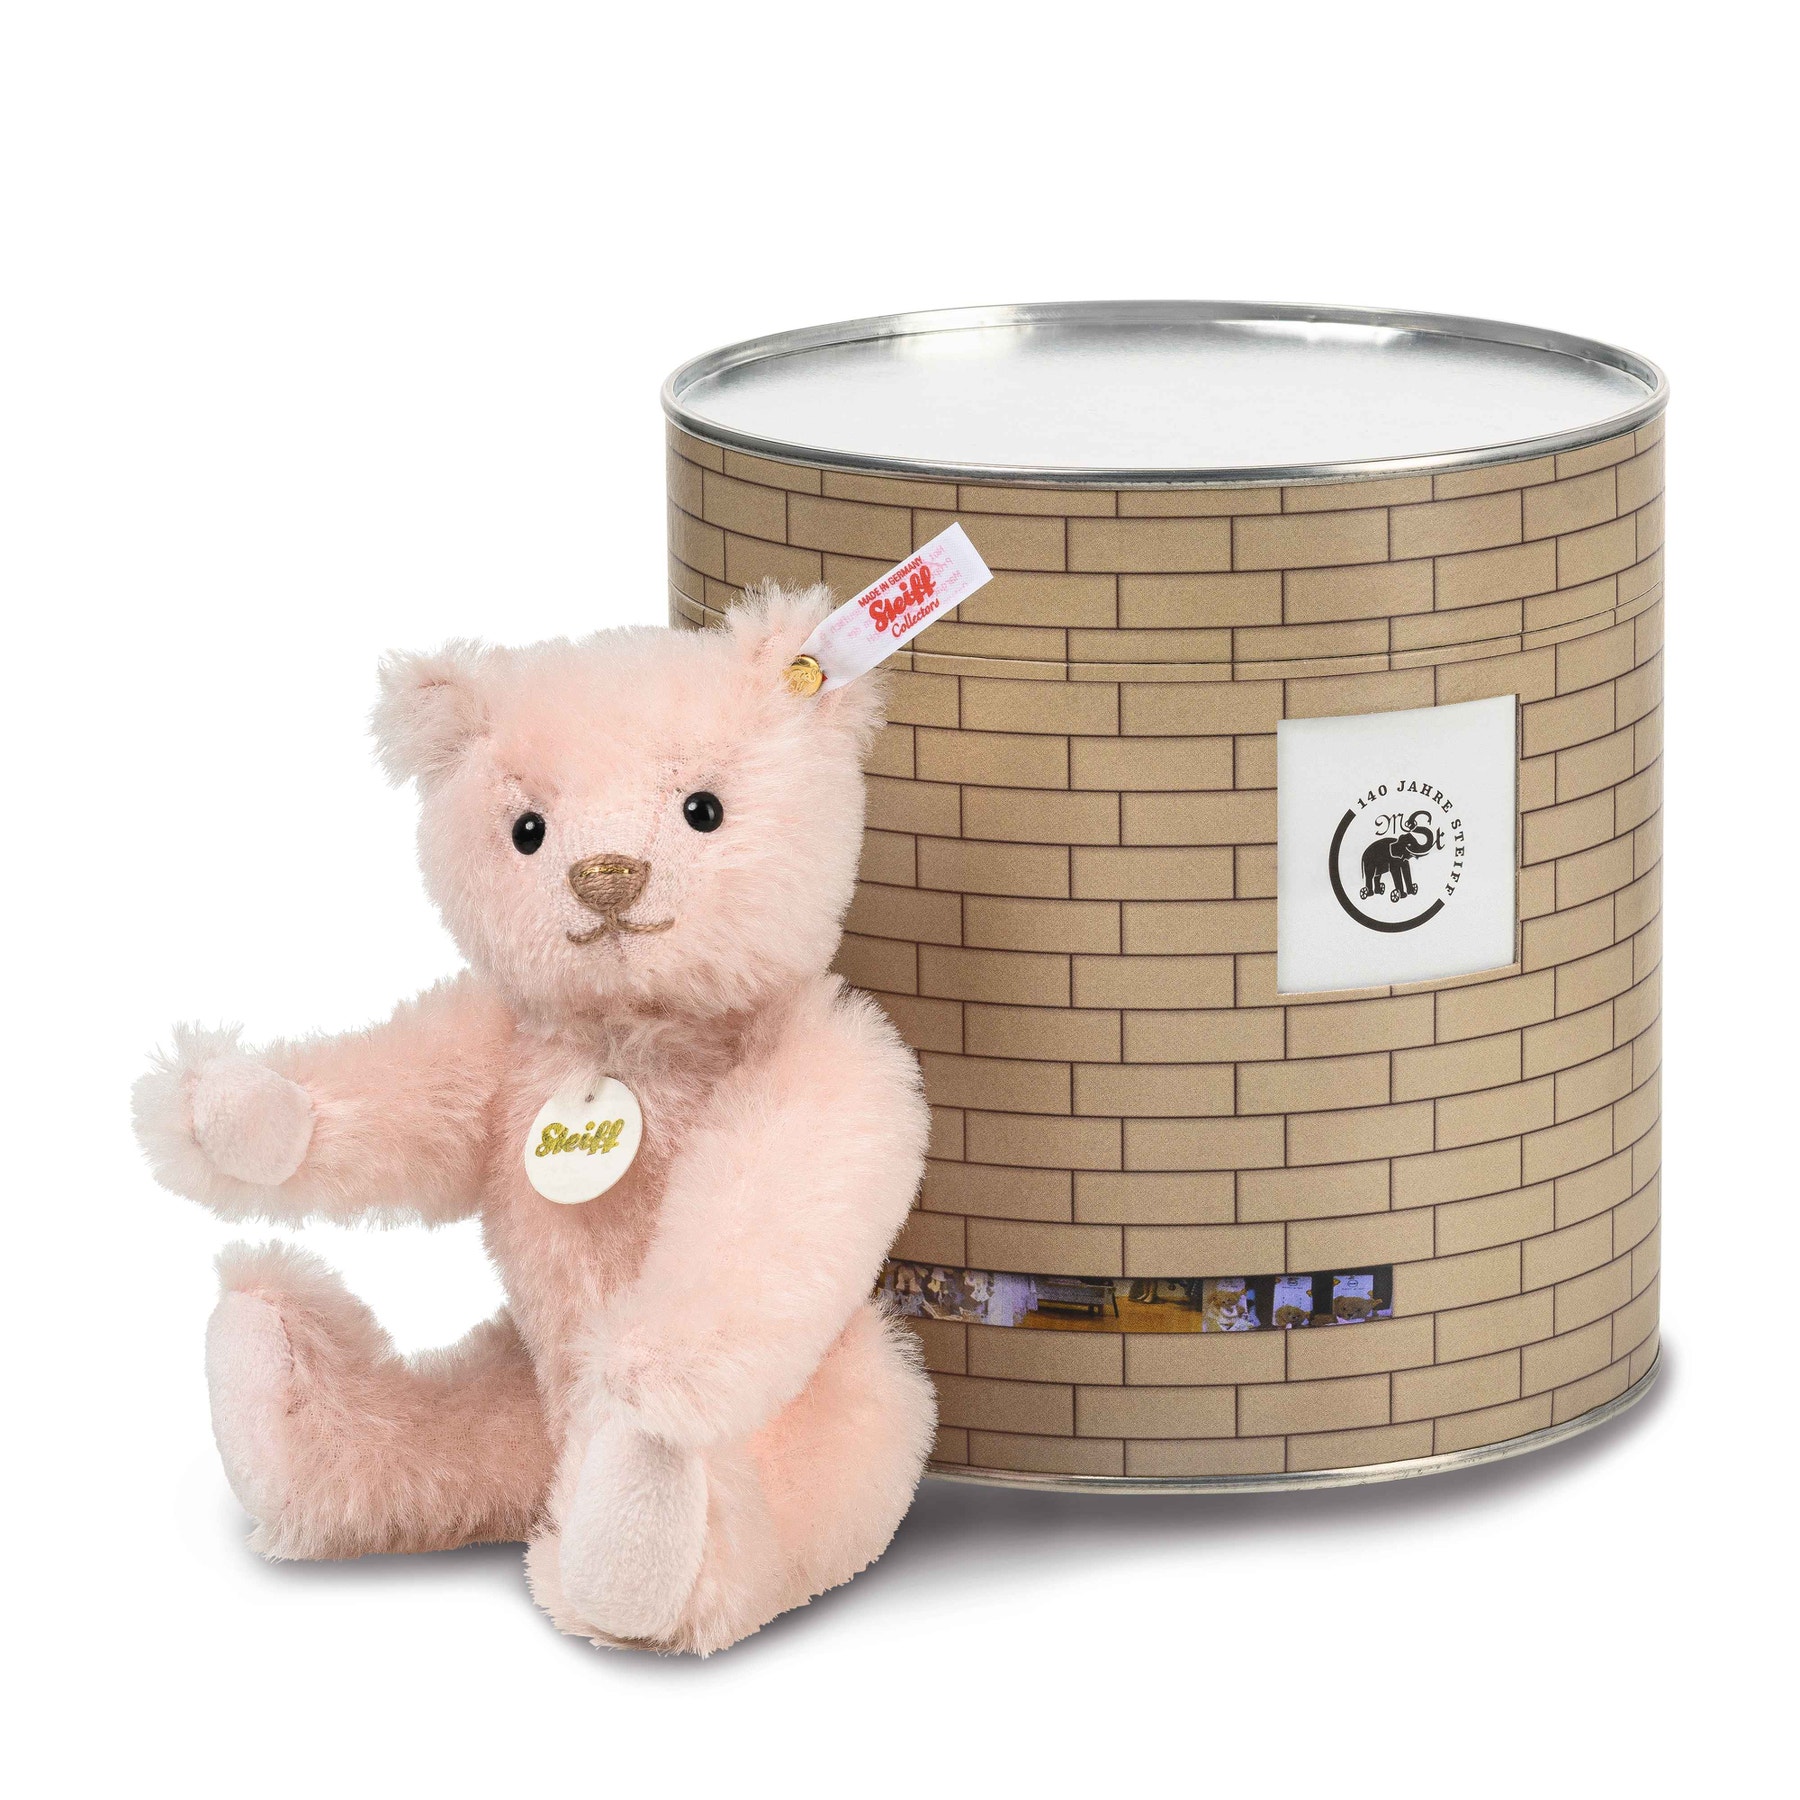 15 Jahre Steiff Museum Teddybär in der Box